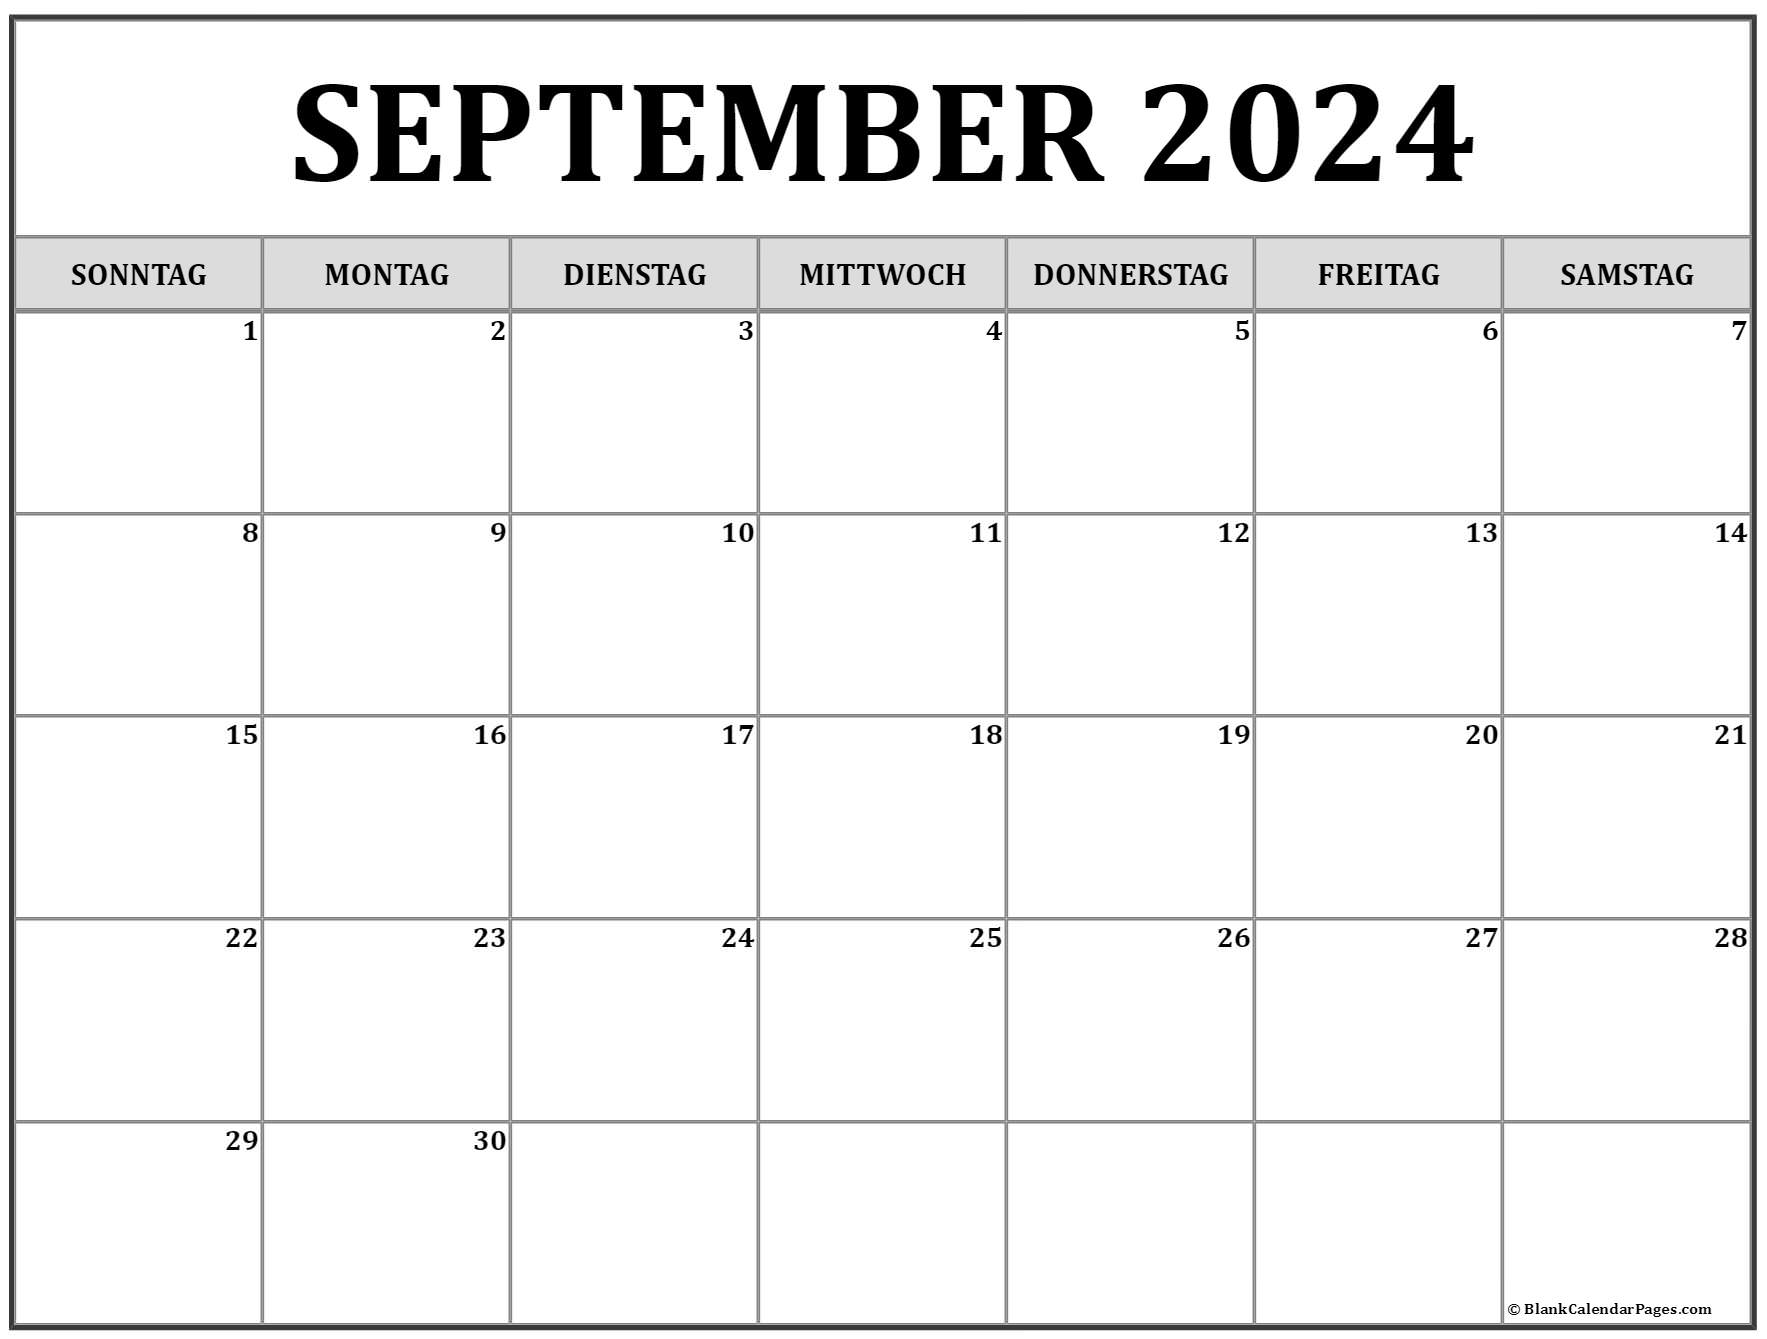 September 2024 kalender auf Deutsch kalender 2024